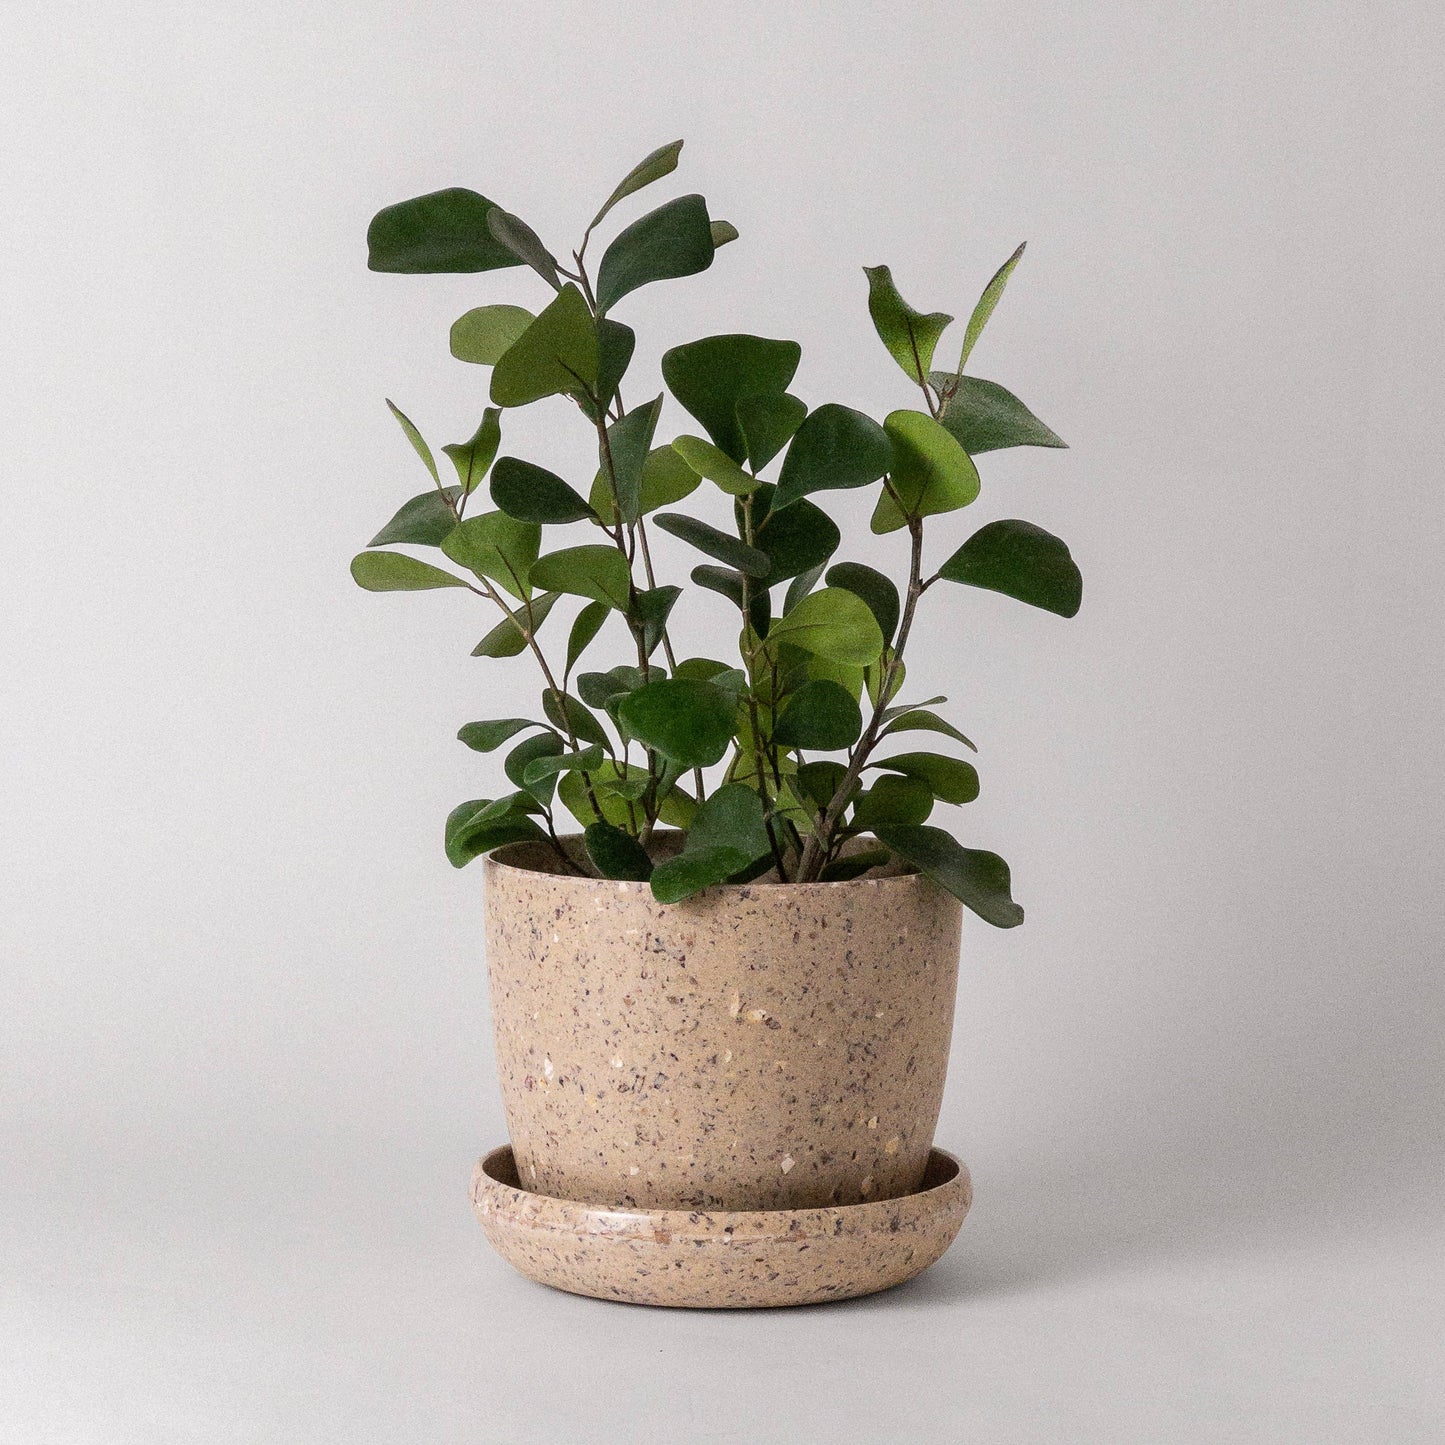 Kanso Designs 7" Coffee Bean Planter Pot